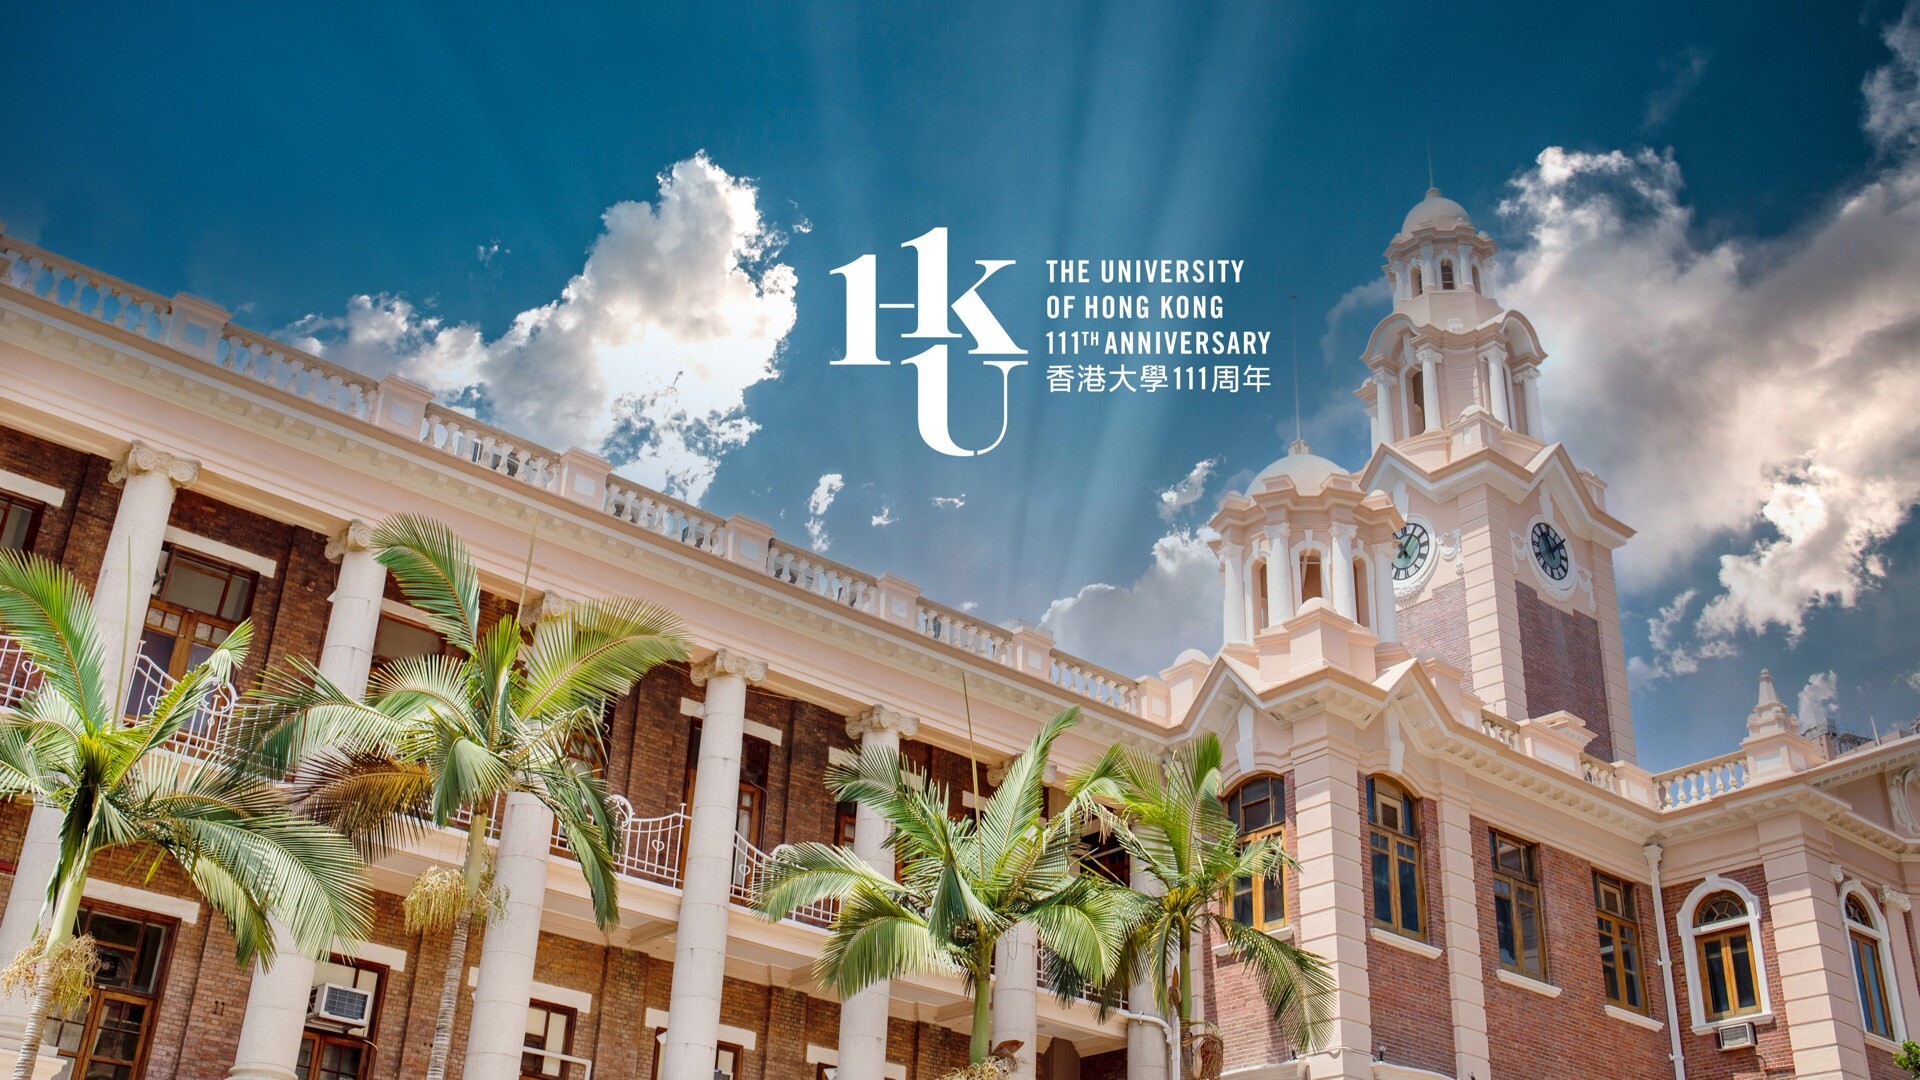 HKU 111香港大学周年纪念壁纸